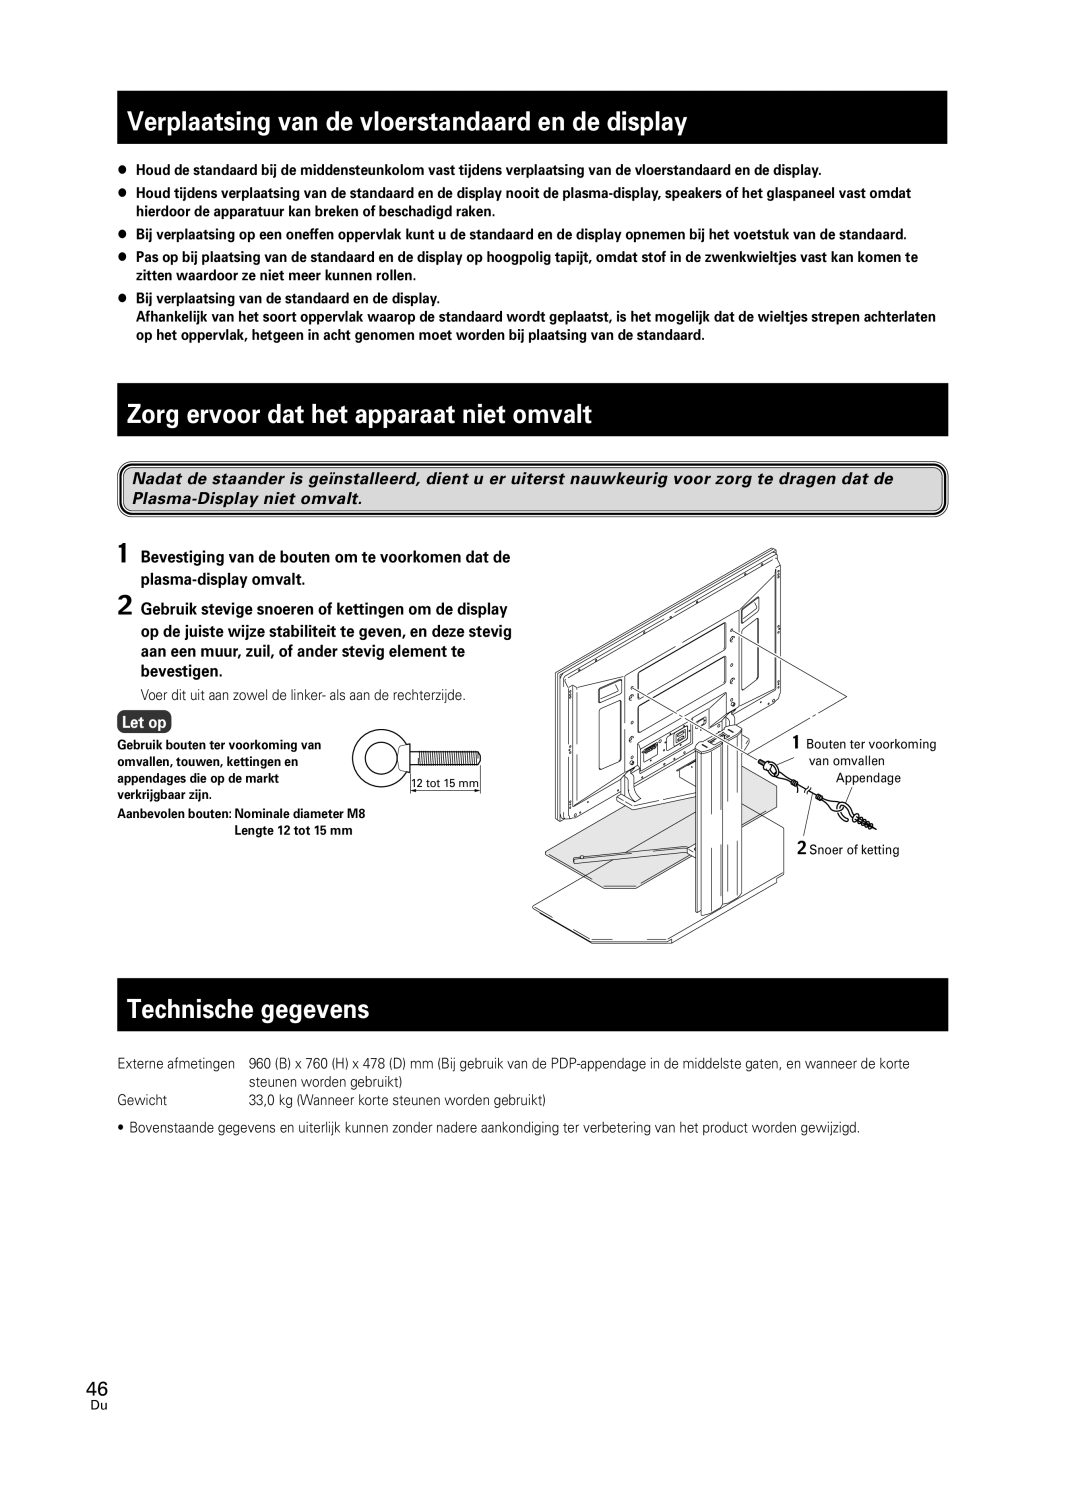 Pioneer PDK-FS05 manual Verplaatsing van de vloerstandaard en de display, Zorg ervoor dat het apparaat niet omvalt, Let op 